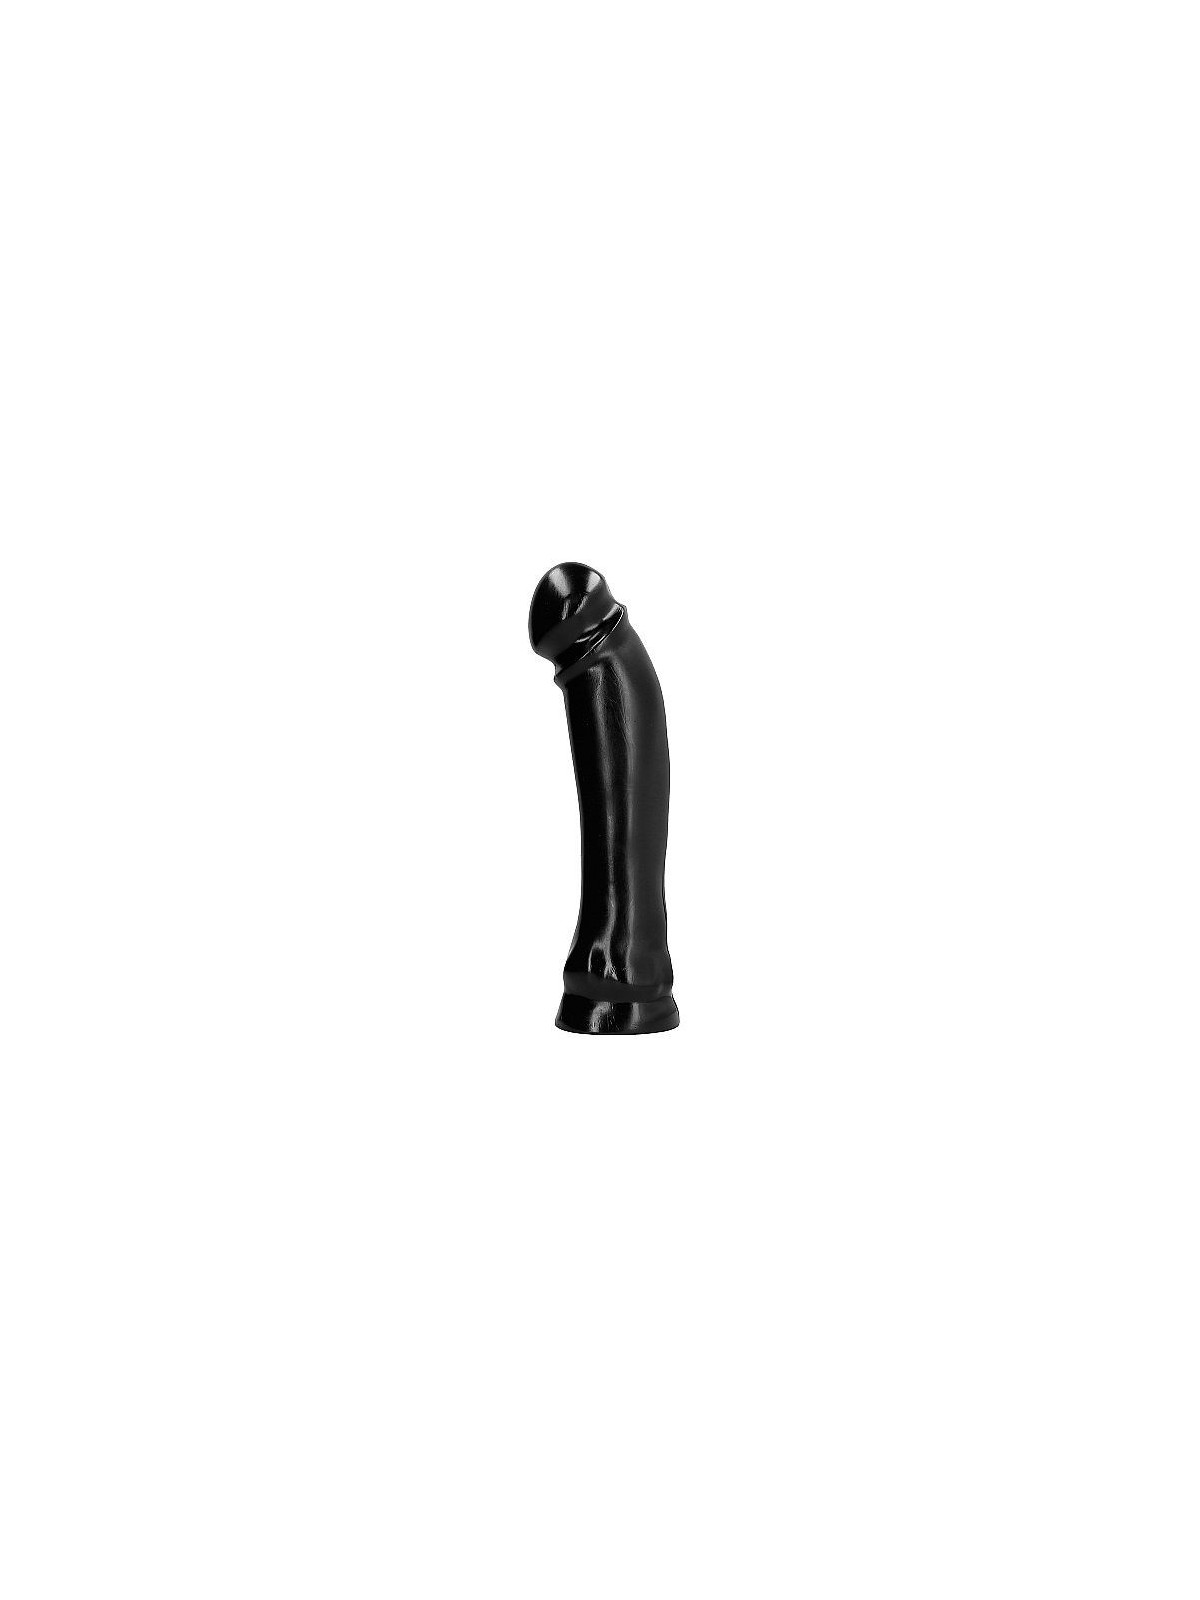 All Black Dong 33 cm - Comprar Juguetes fisting All Black - Fisting (1)